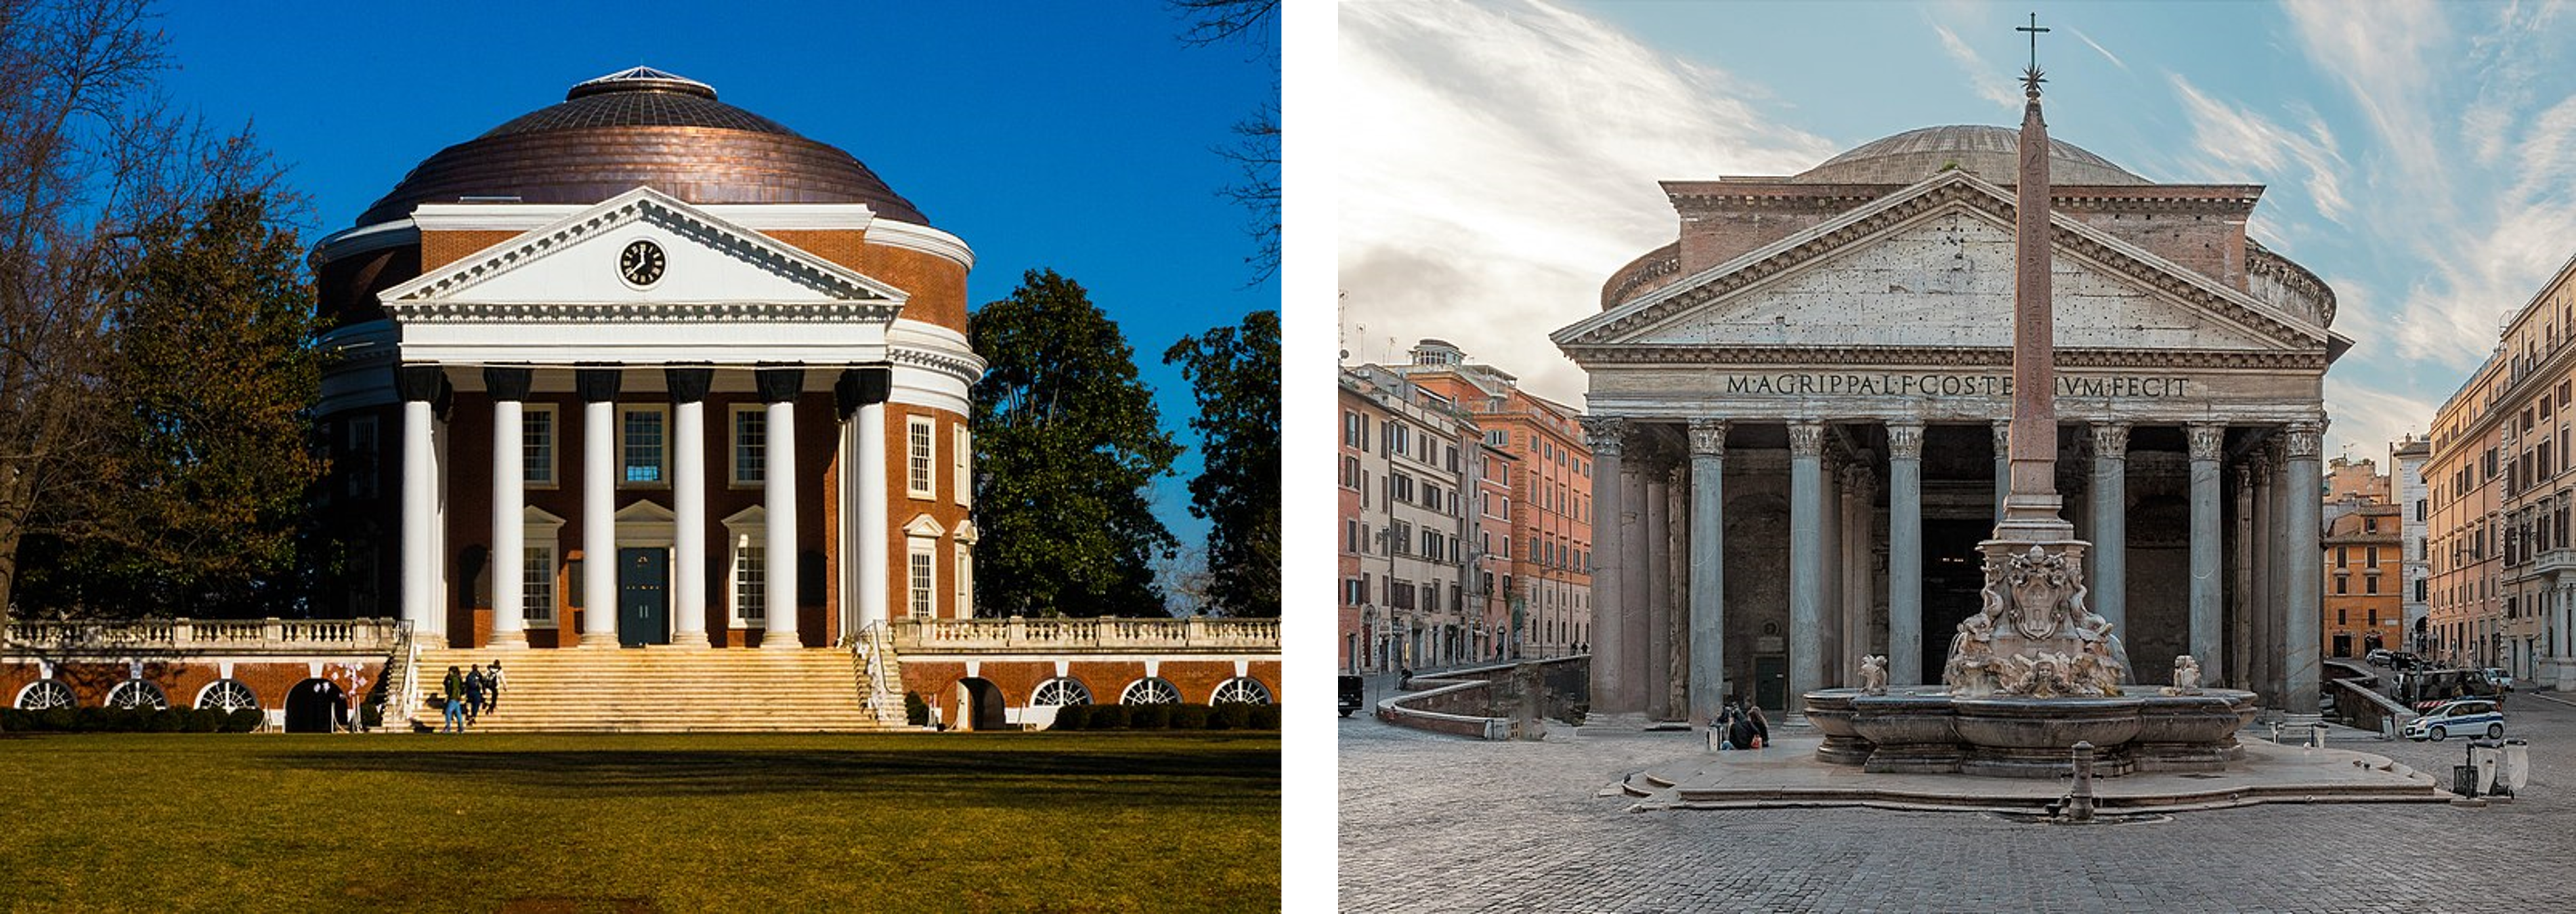 Thomas Jefferson, Rotunda, University of Virginia, Charlottesville, 1817-1826. (left) Pantheon, 117-125 CE, Rome, Italy (right)